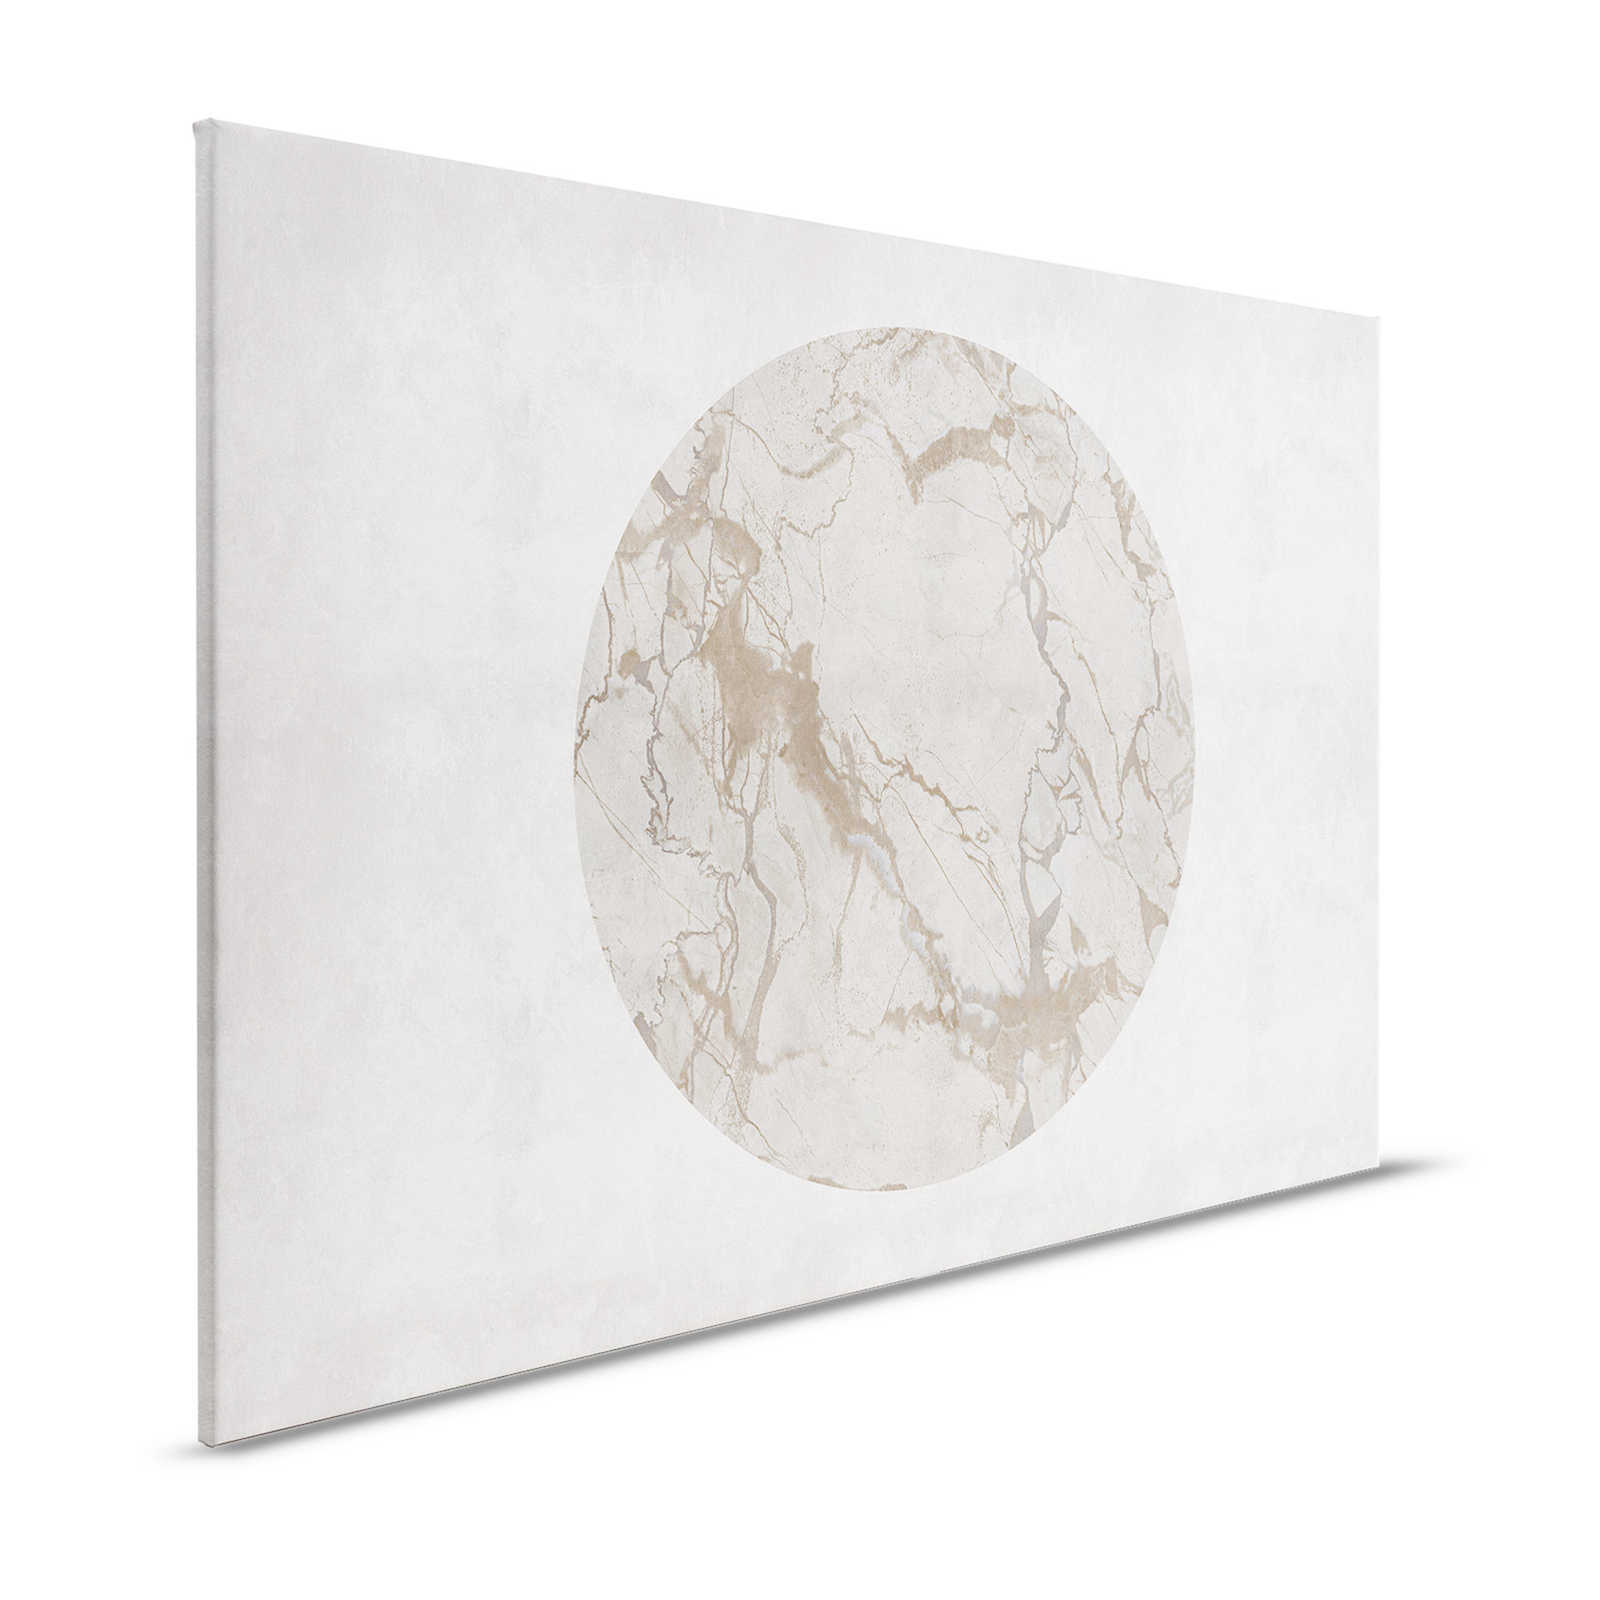 Mercurio 2 - Canvas schilderij Greige stone look met marmereffect - 1.20 m x 0.80 m
